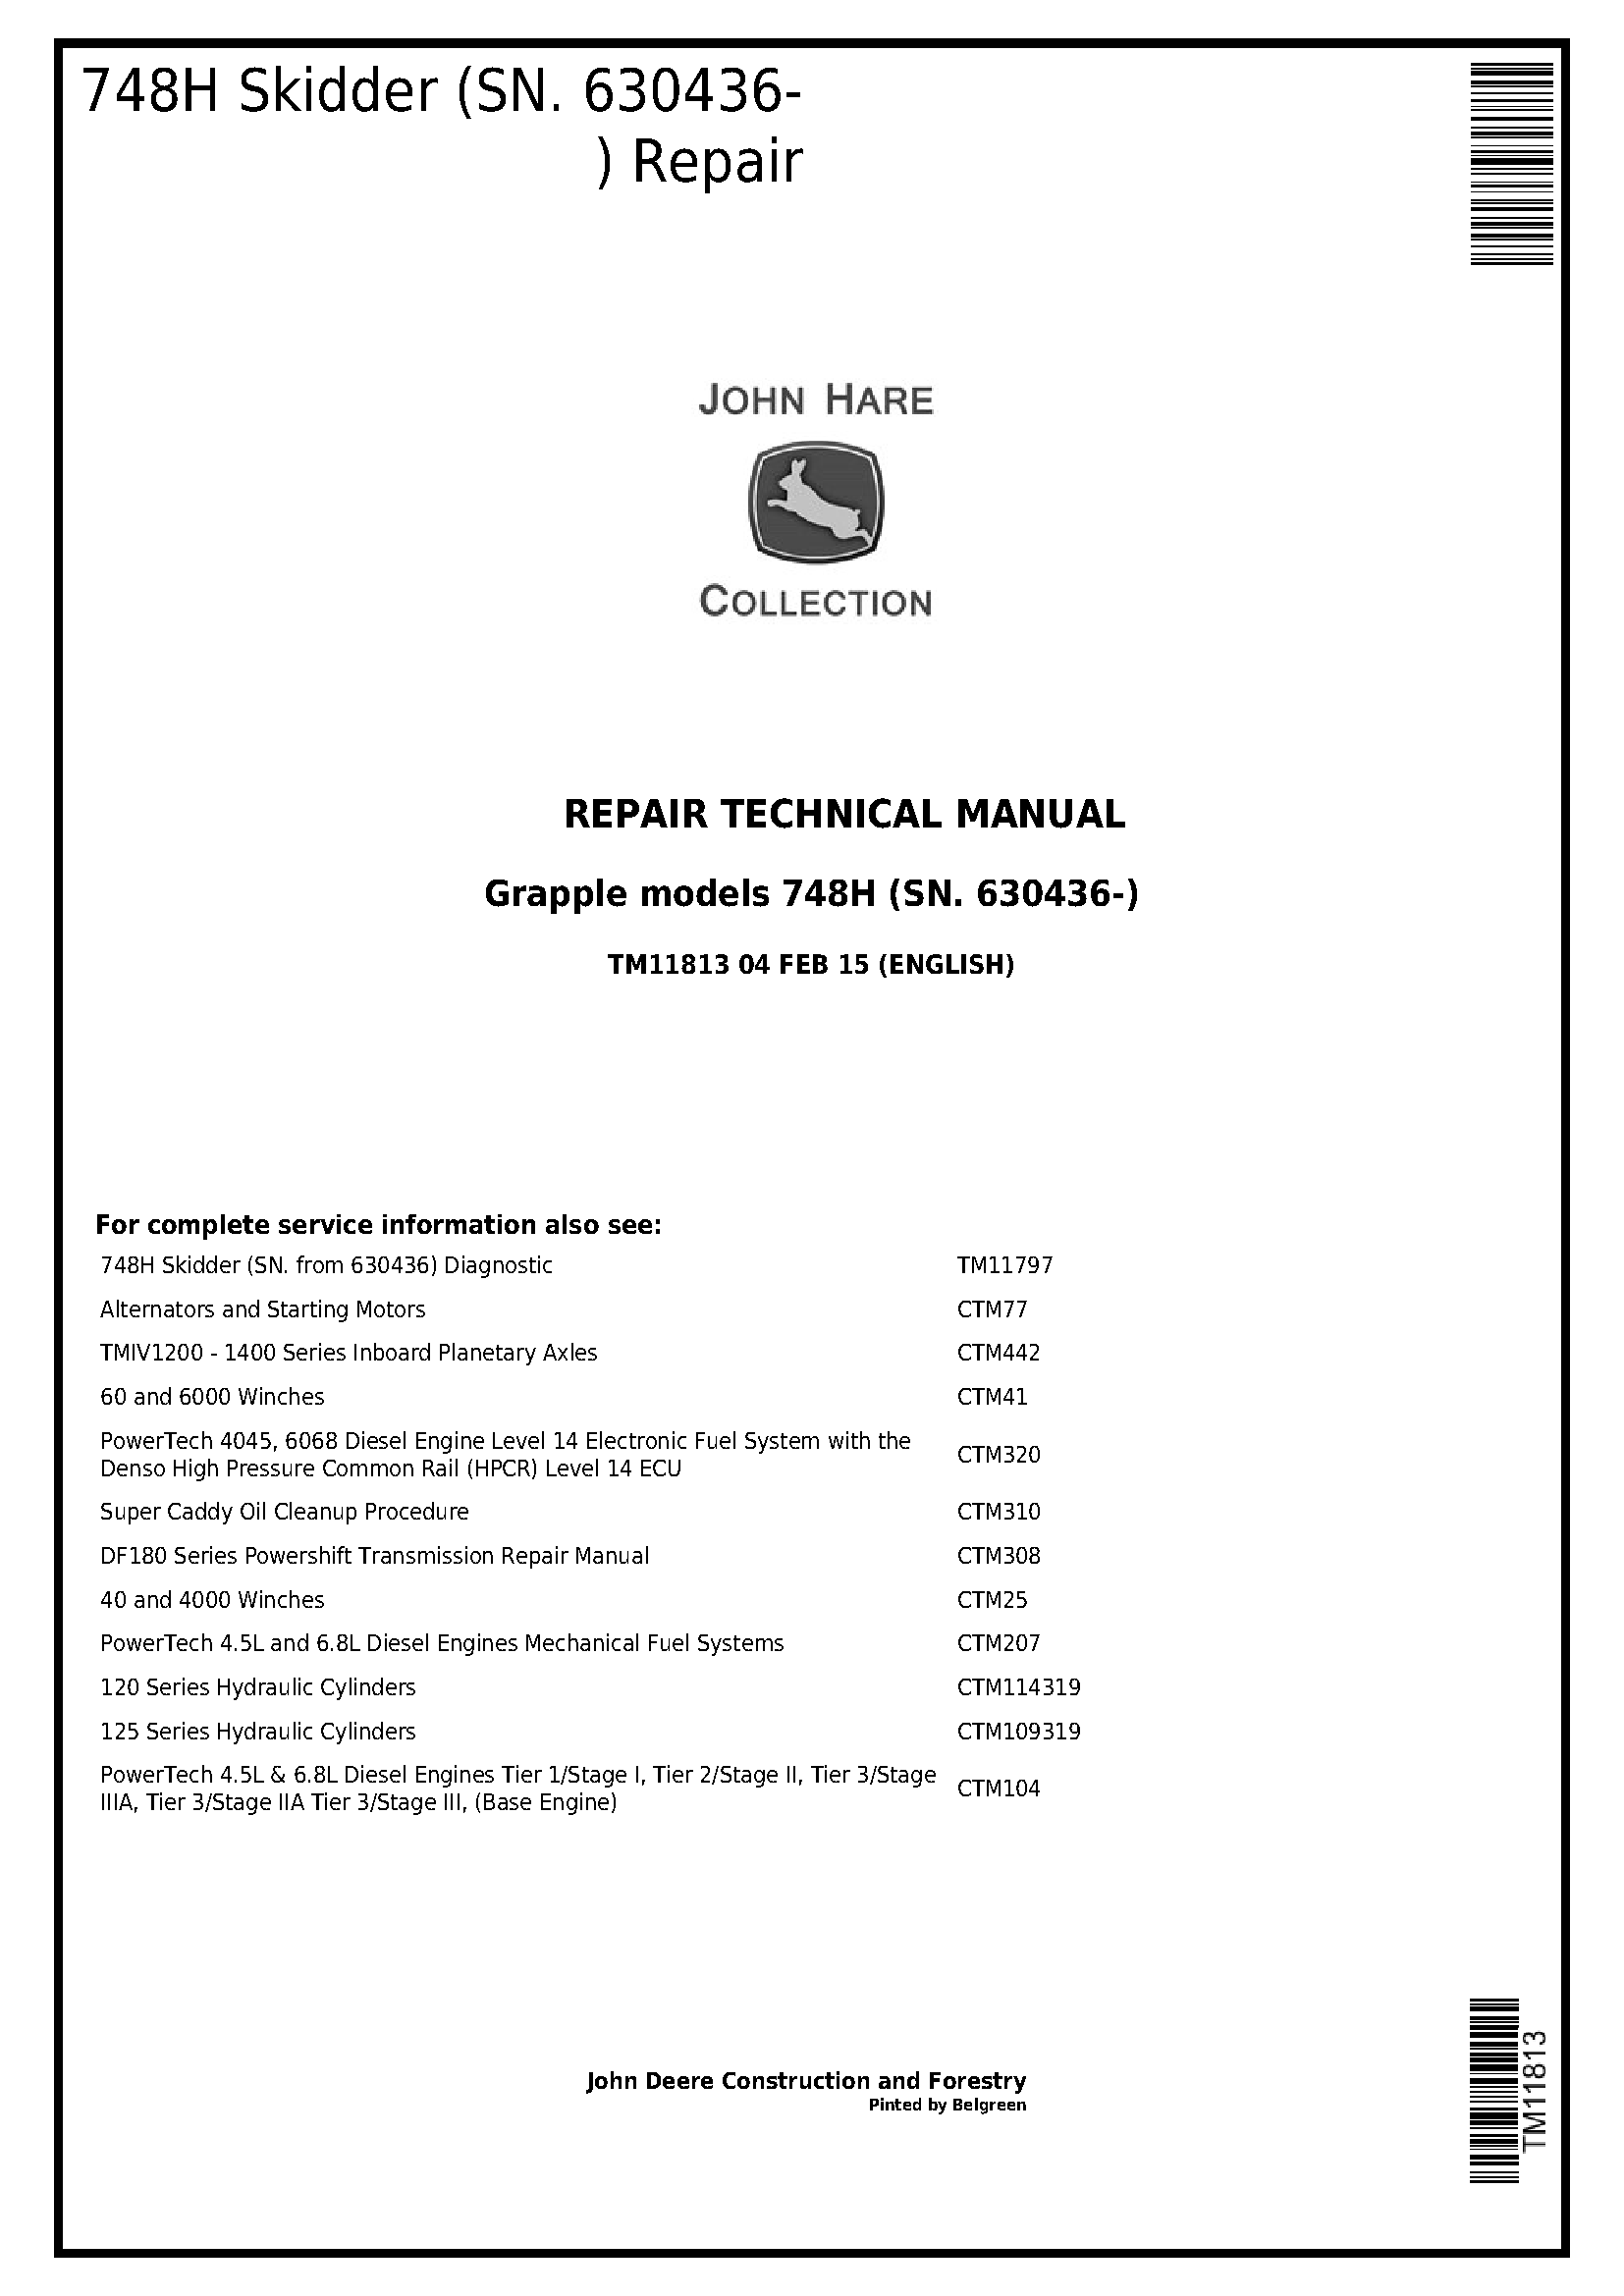 John Deere 748H (SN. 630436-) Grapple Skidder Service Repair Technical Manual - TM11813